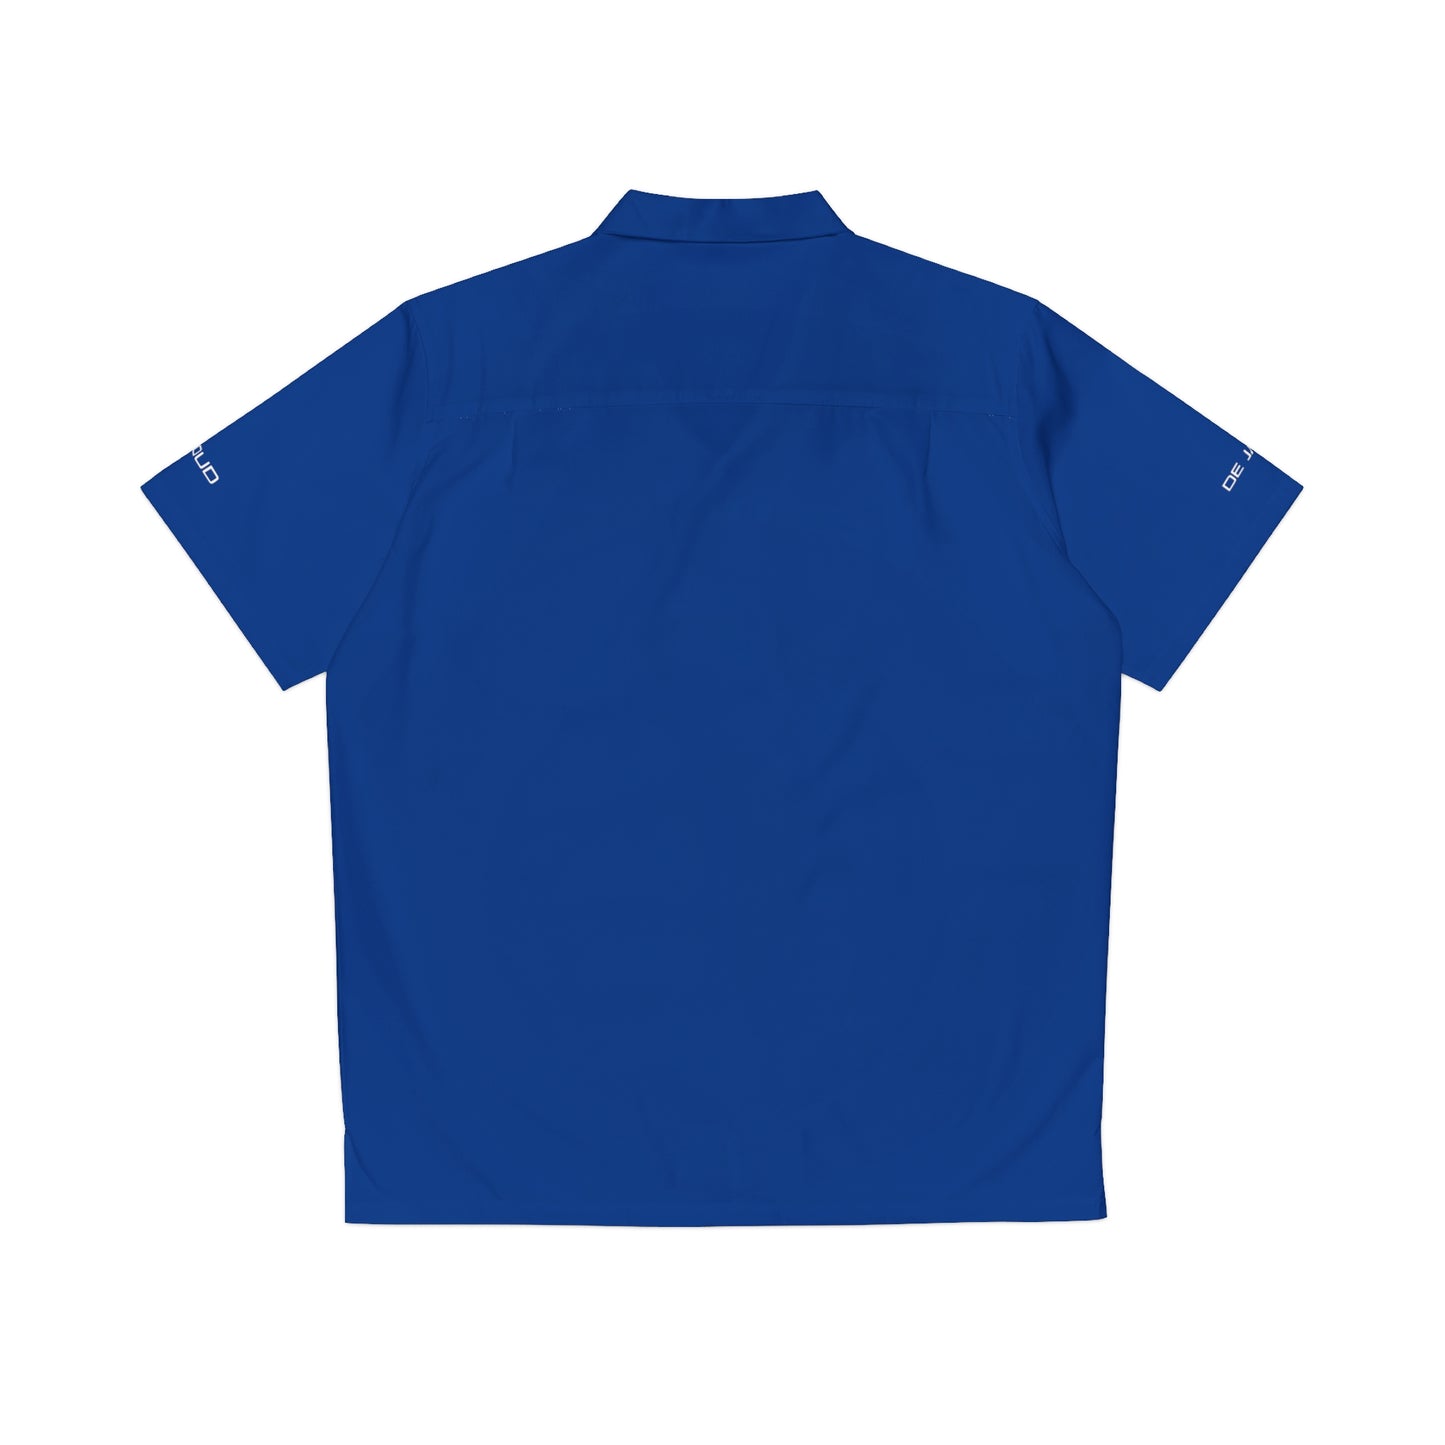 De Janoud - Fairway Shirt / Hemd - SQR blue